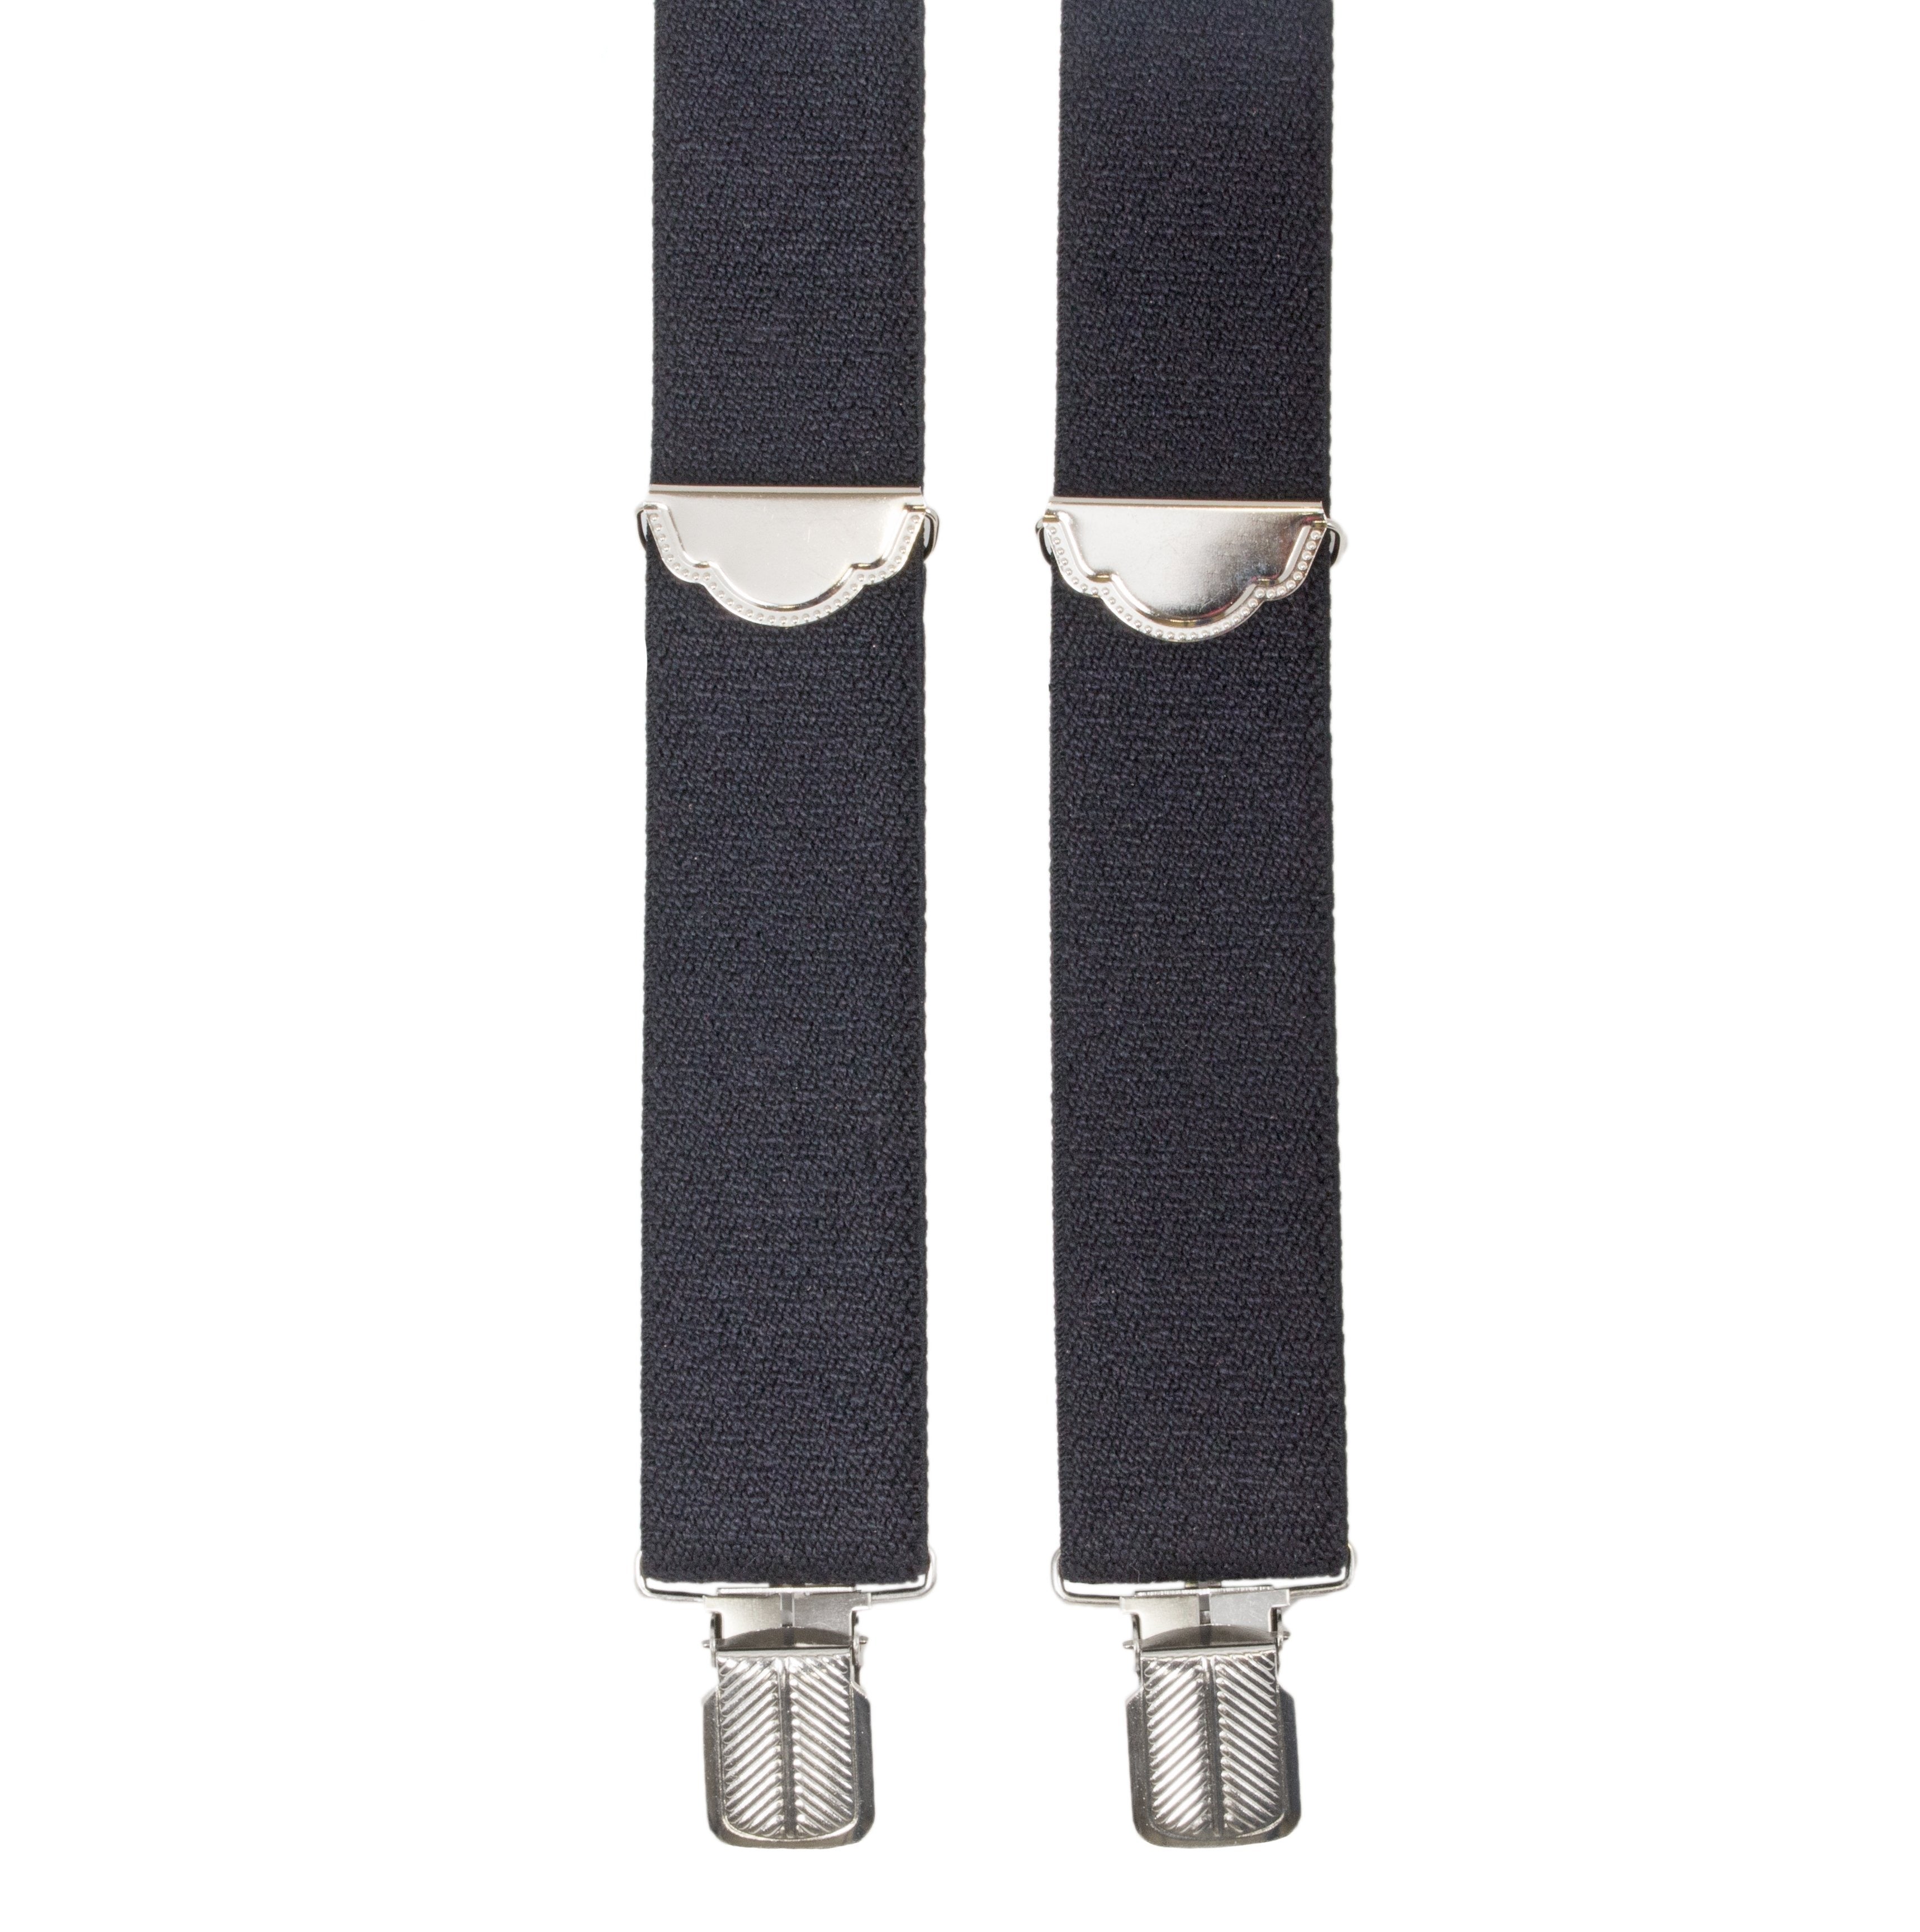 Style 6008 - 35MM 1" Basic work suspender